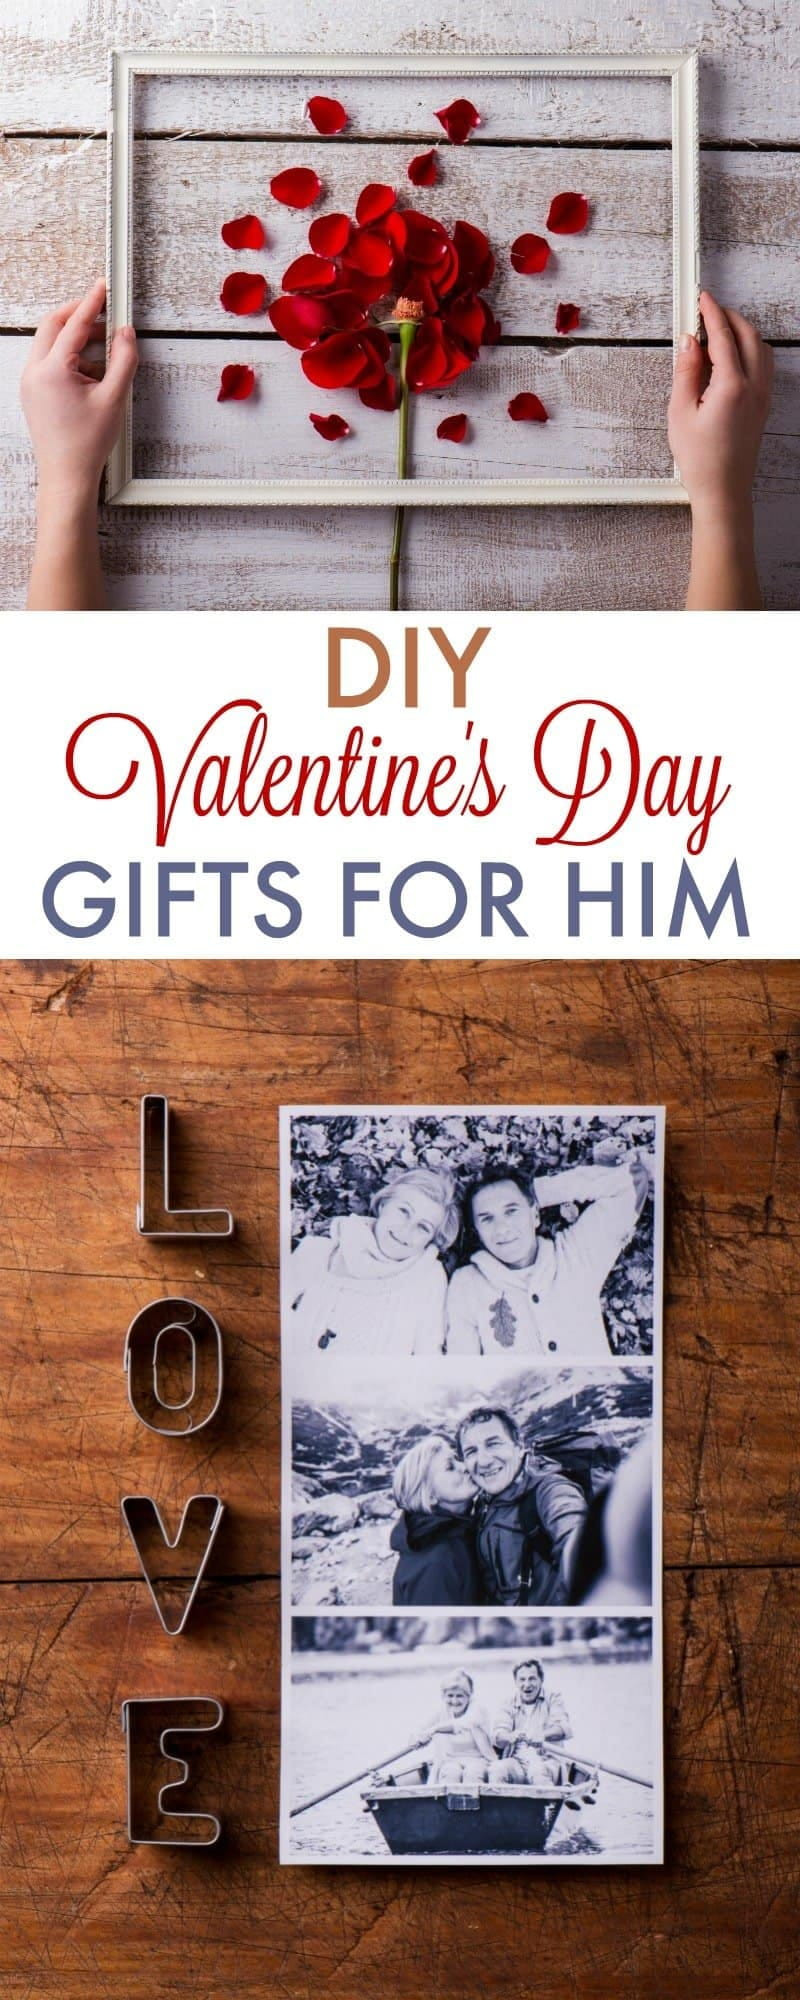 Boyfriend DIY Gifts
 DIY Valentine s Day Gifts for Boyfriend 730 Sage Street